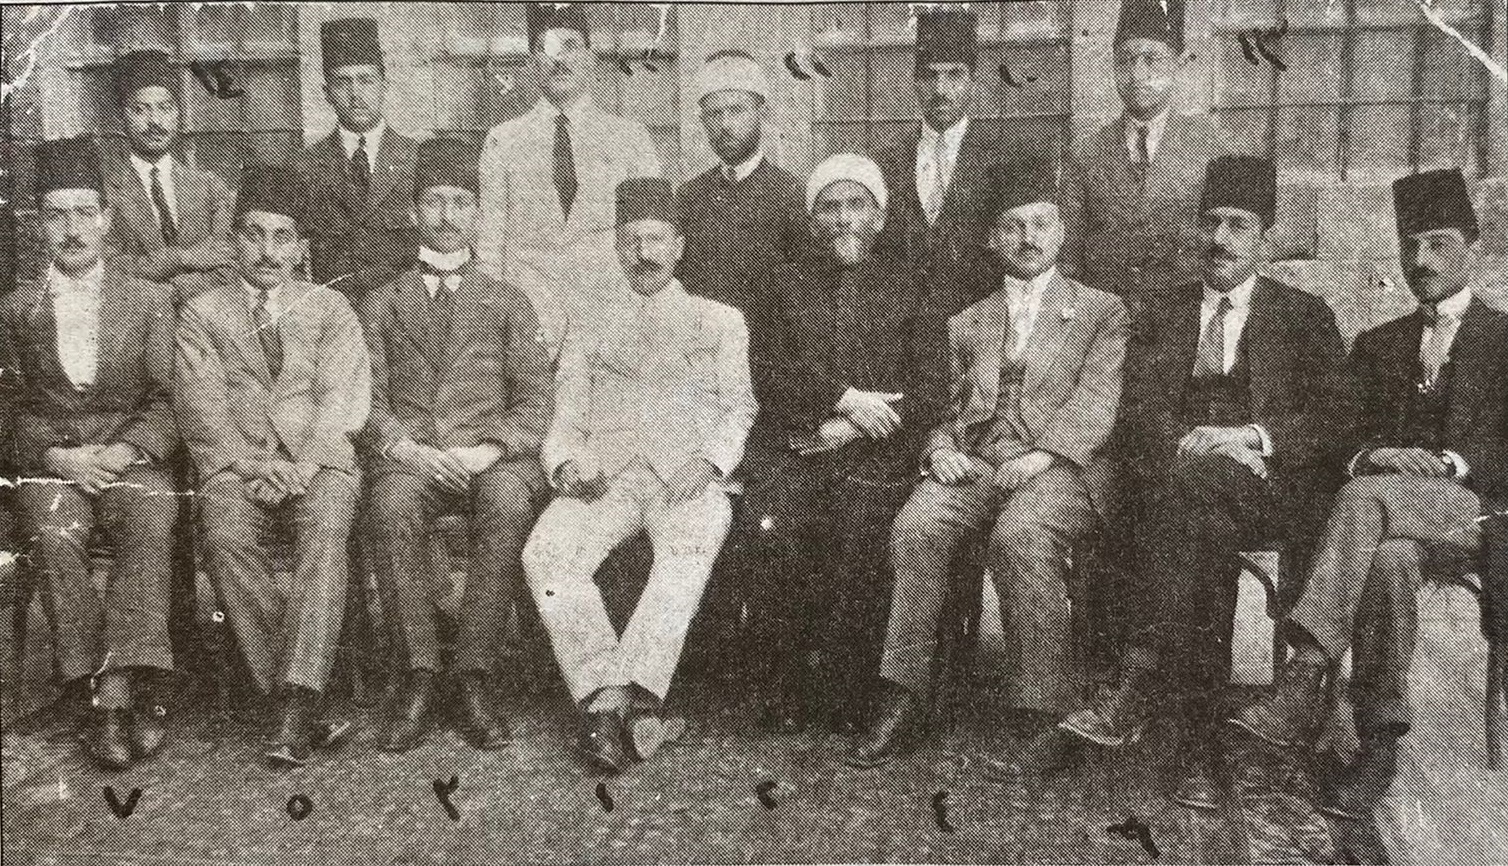 التاريخ السوري المعاصر - مدير ومدرسو مكتب عنبر في دمشق عام 1920م